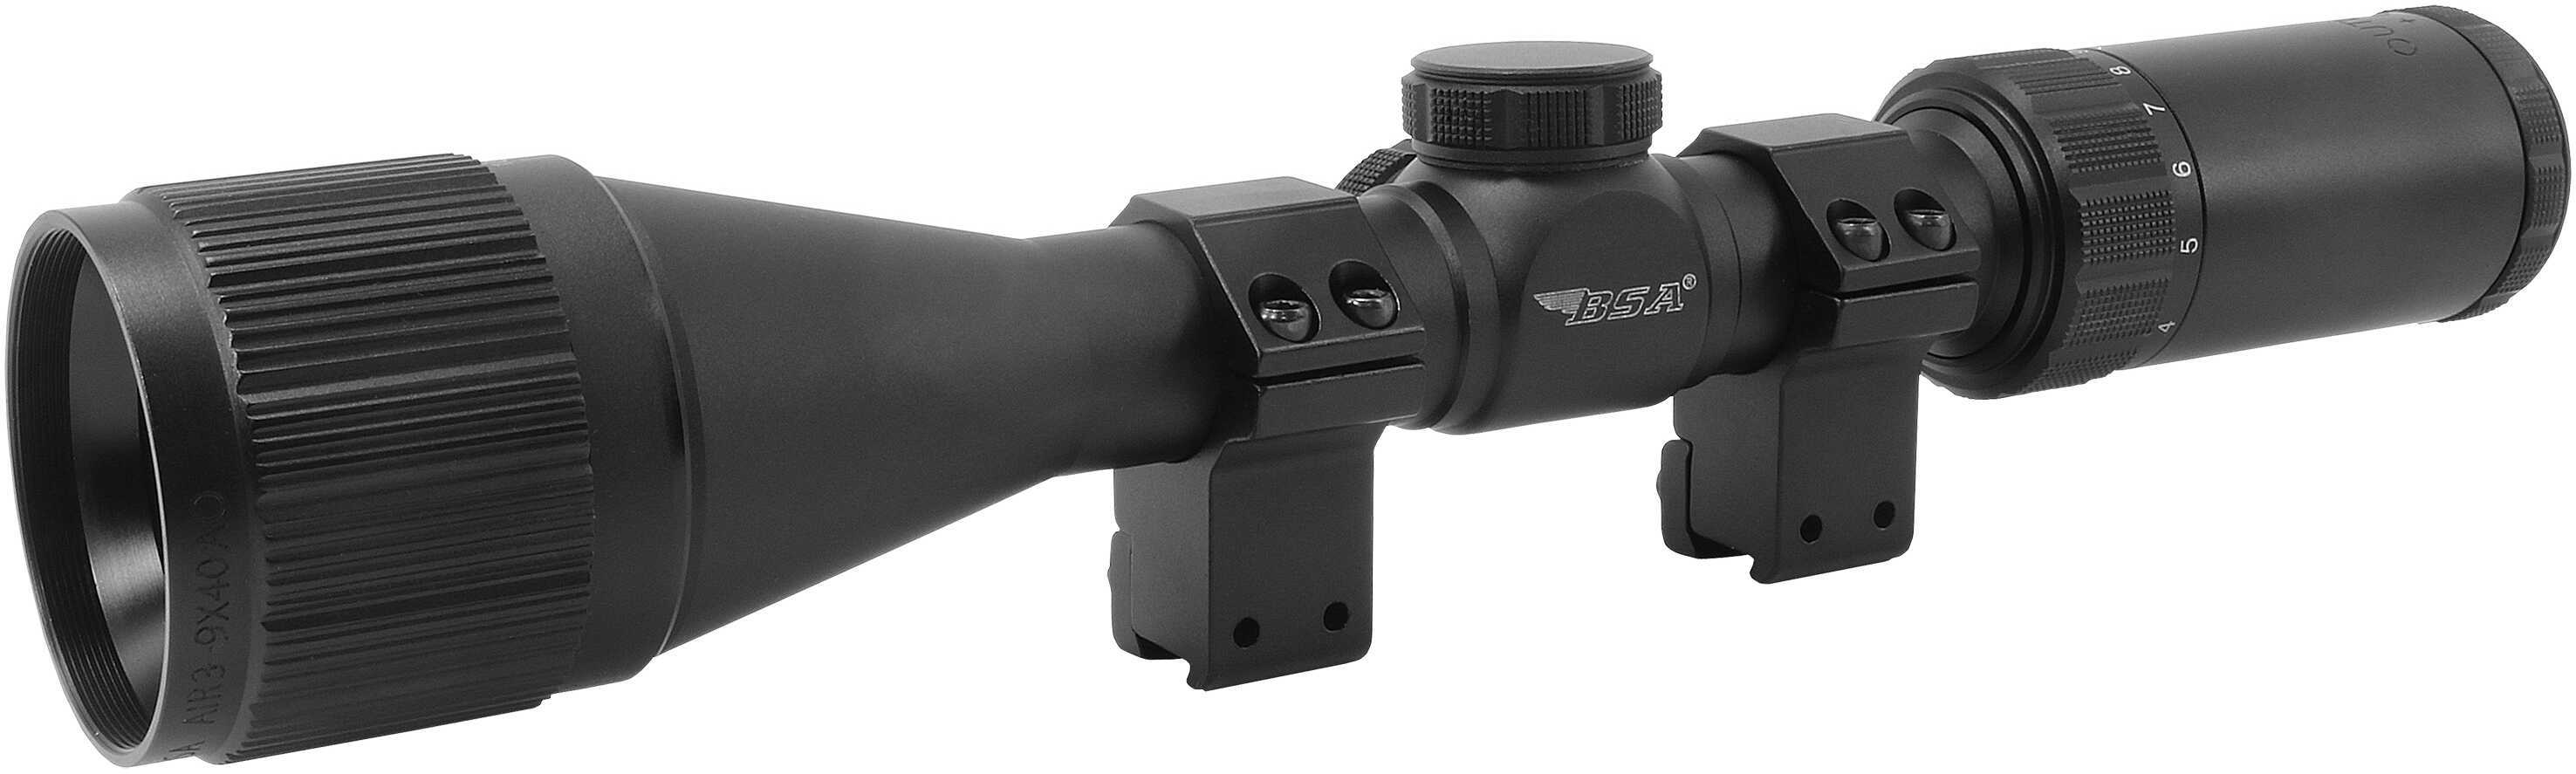 BSA Optics Outlook Air Rifle Scope 3-9x40mm Mil-Dot w/ Rings Model: AIR3-9X40AOTB